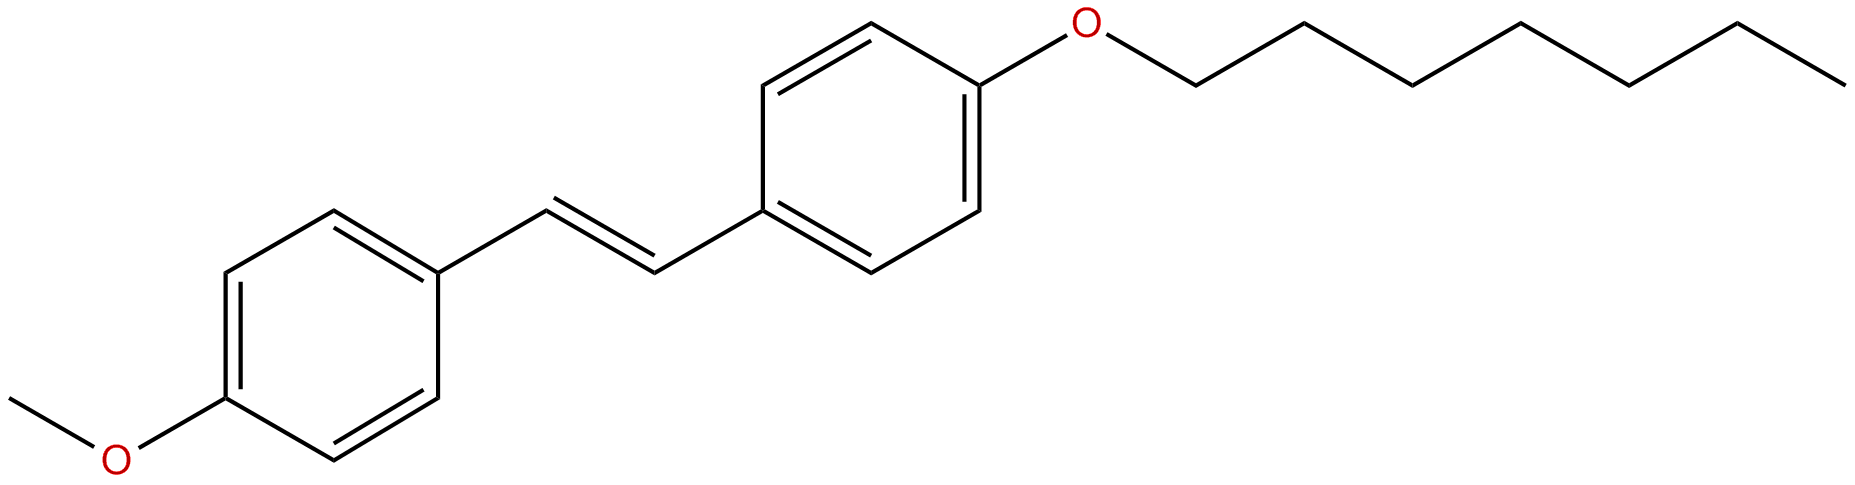 Image of trans-1-(4-methoxyphenyl)-2-(4-heptoxyphenyl)ethene